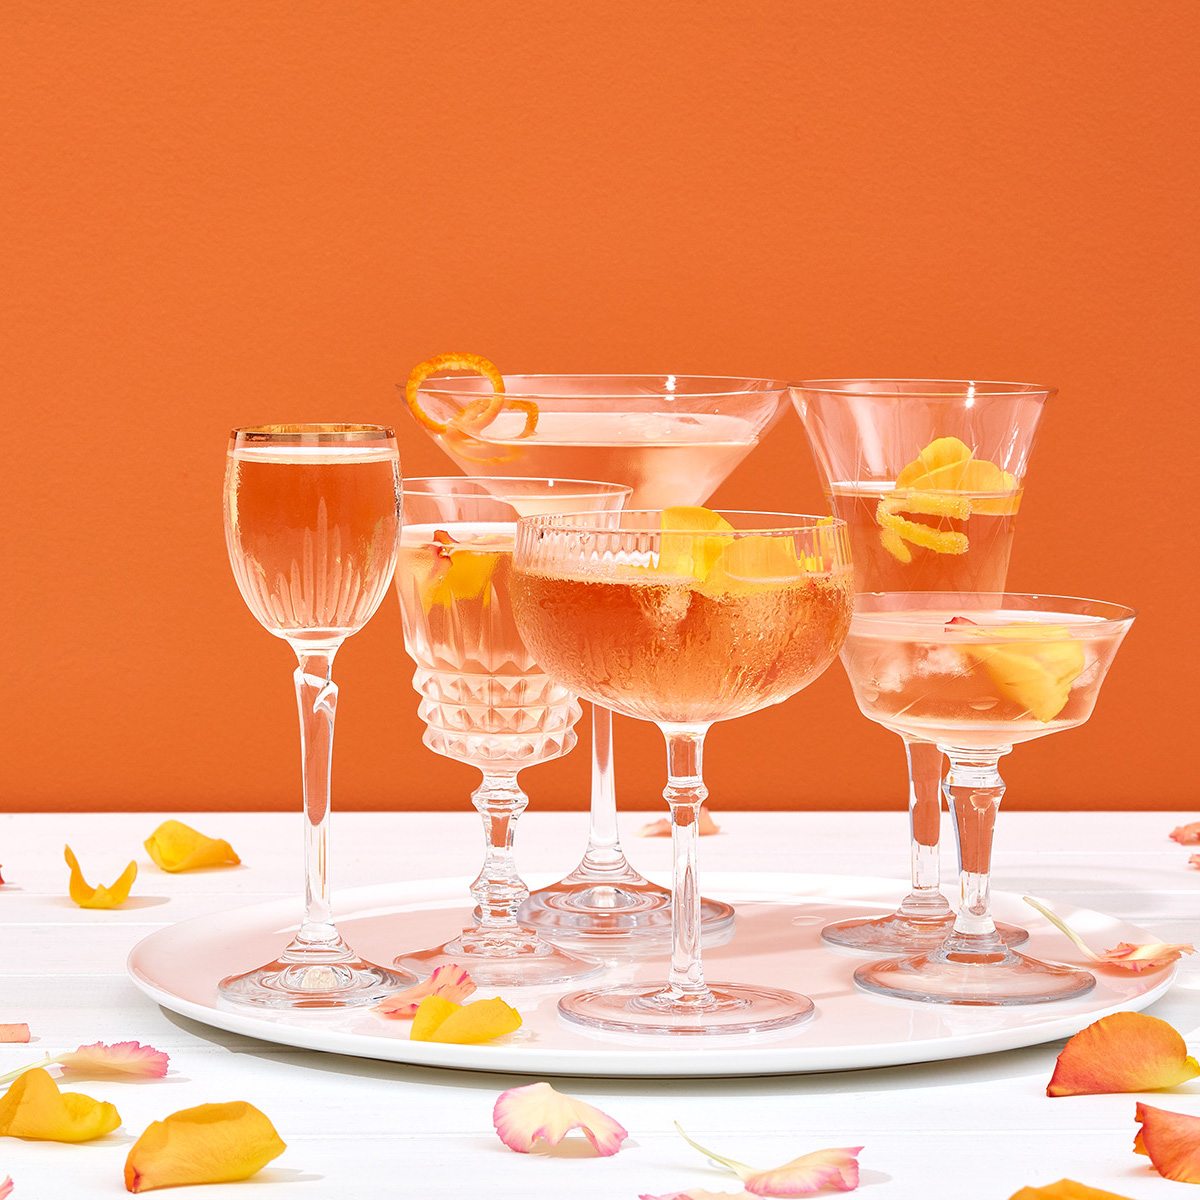 Verres et coupes de Champagne cocktail, pétales de roses fleurs,fond orange (Client Chandon 2019)